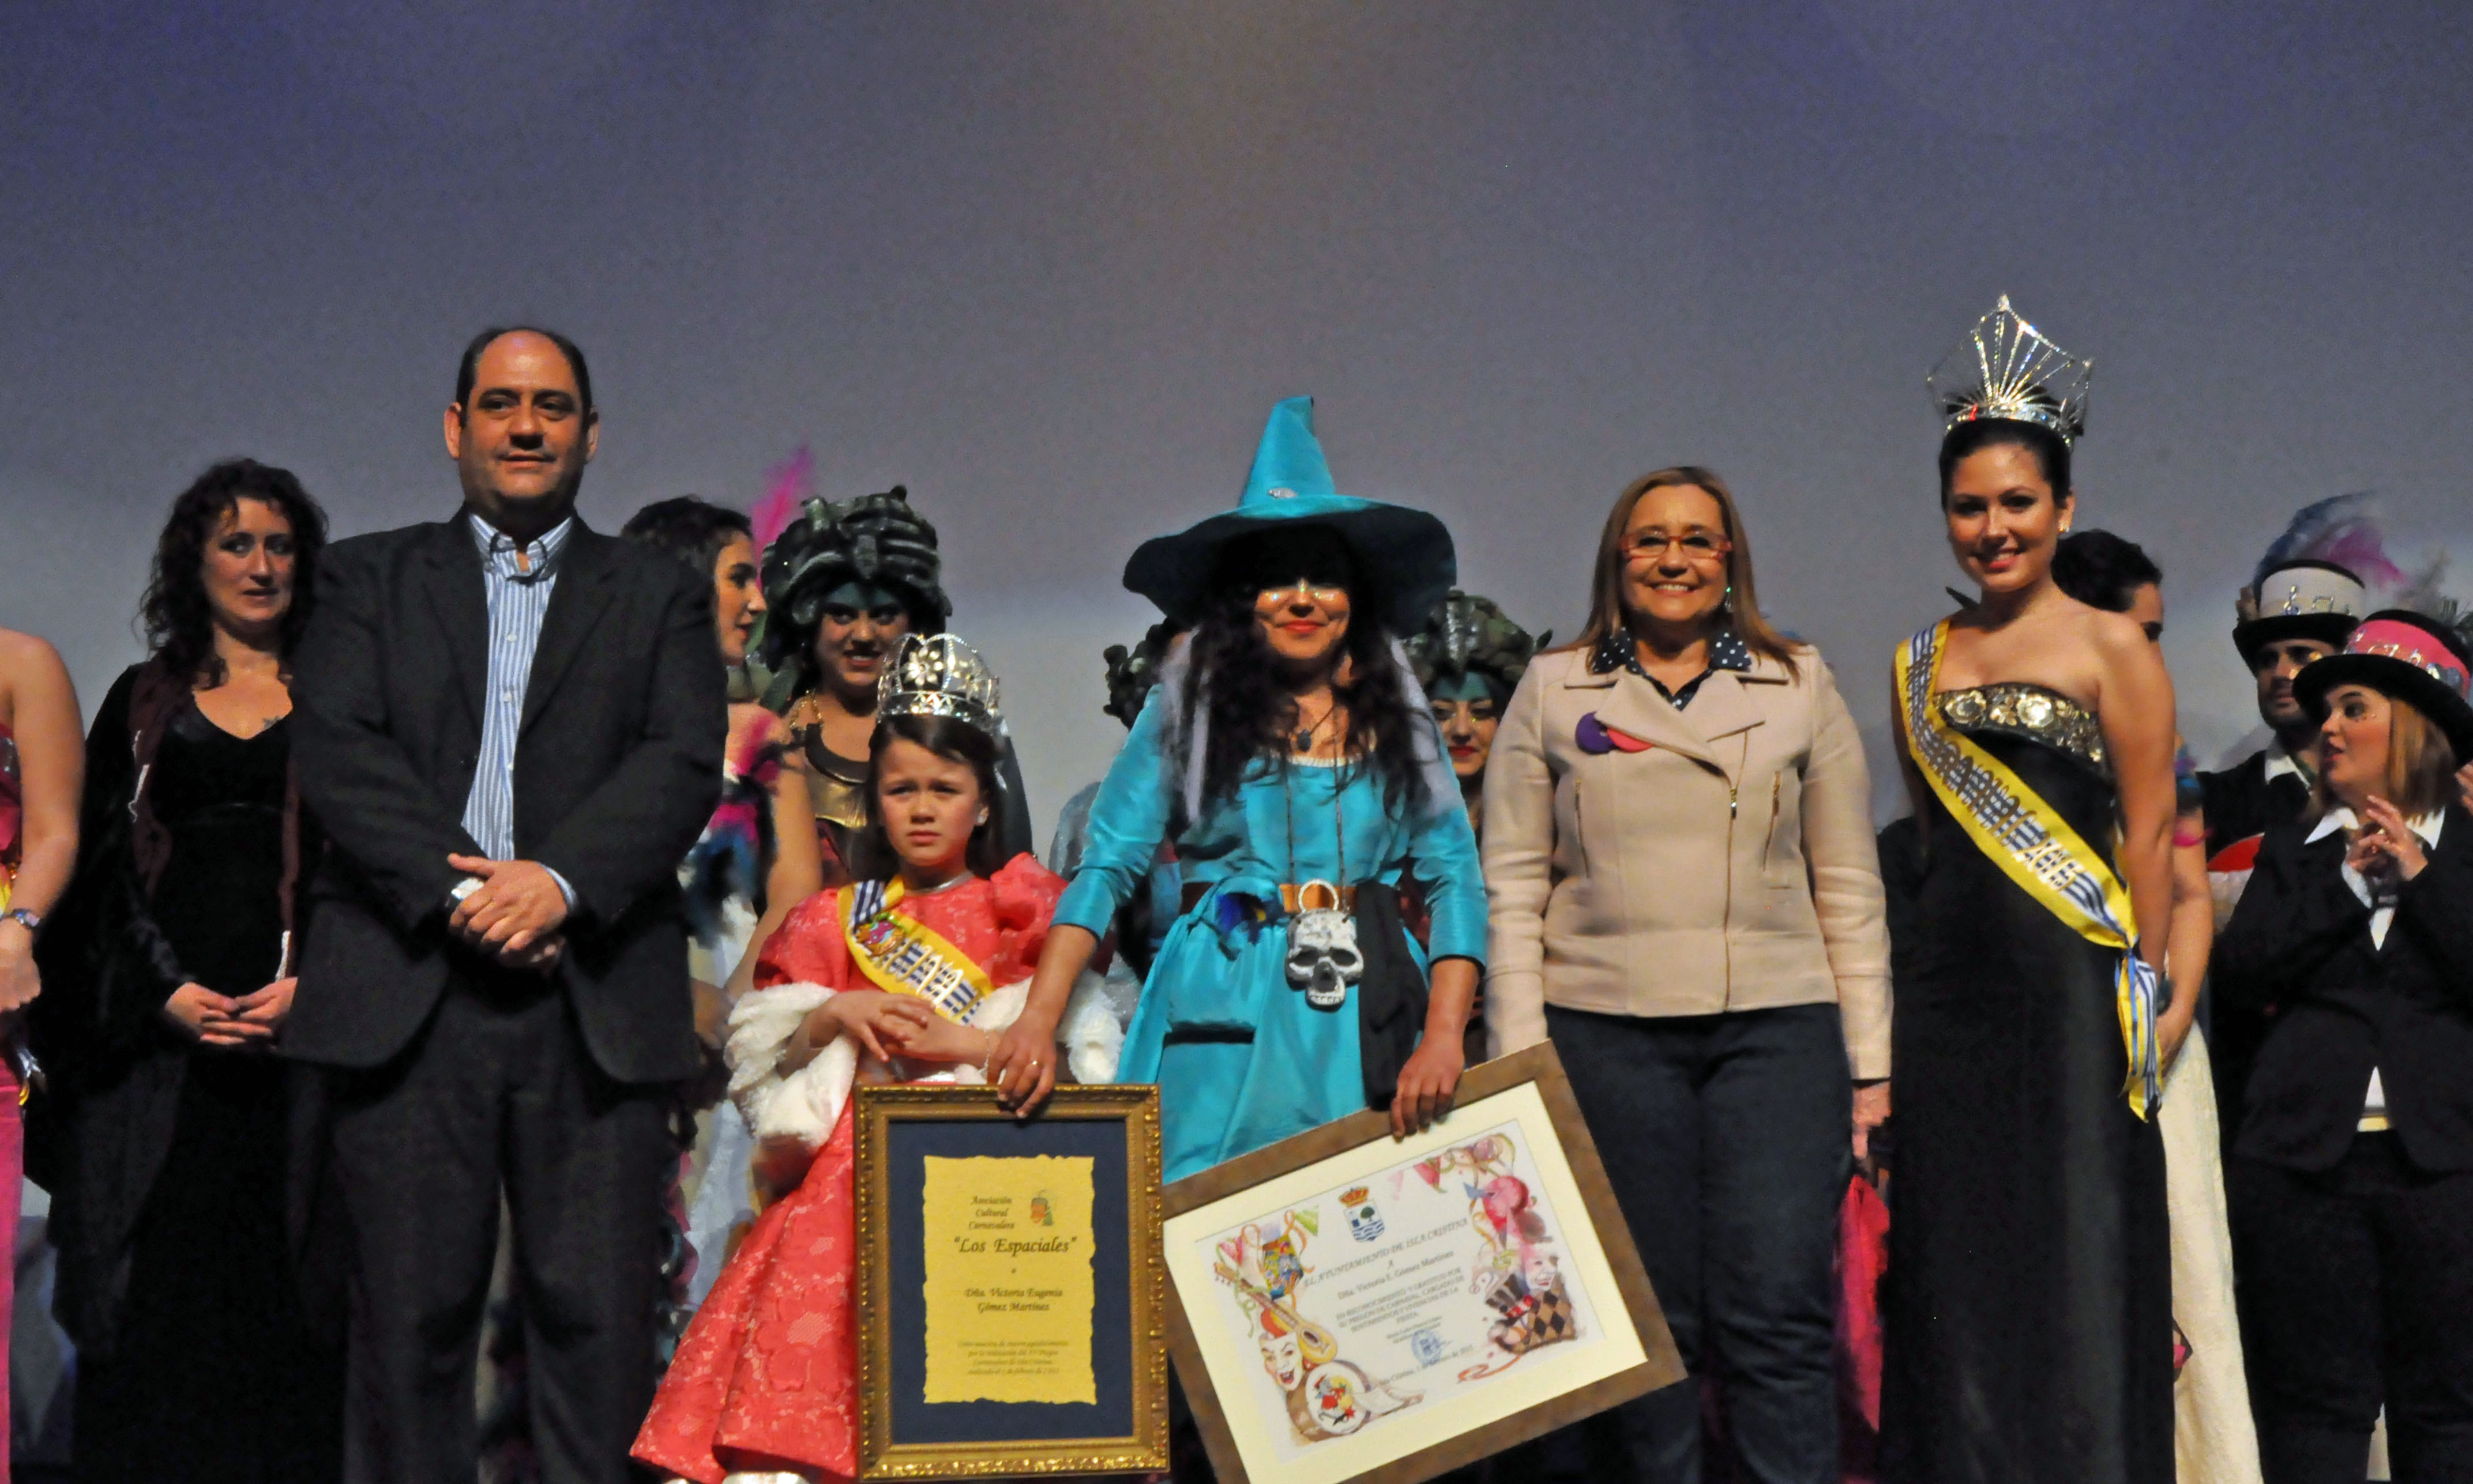 La Alcaldesa junto al presidente de los Espaciales, la Reinas y la Pregonera